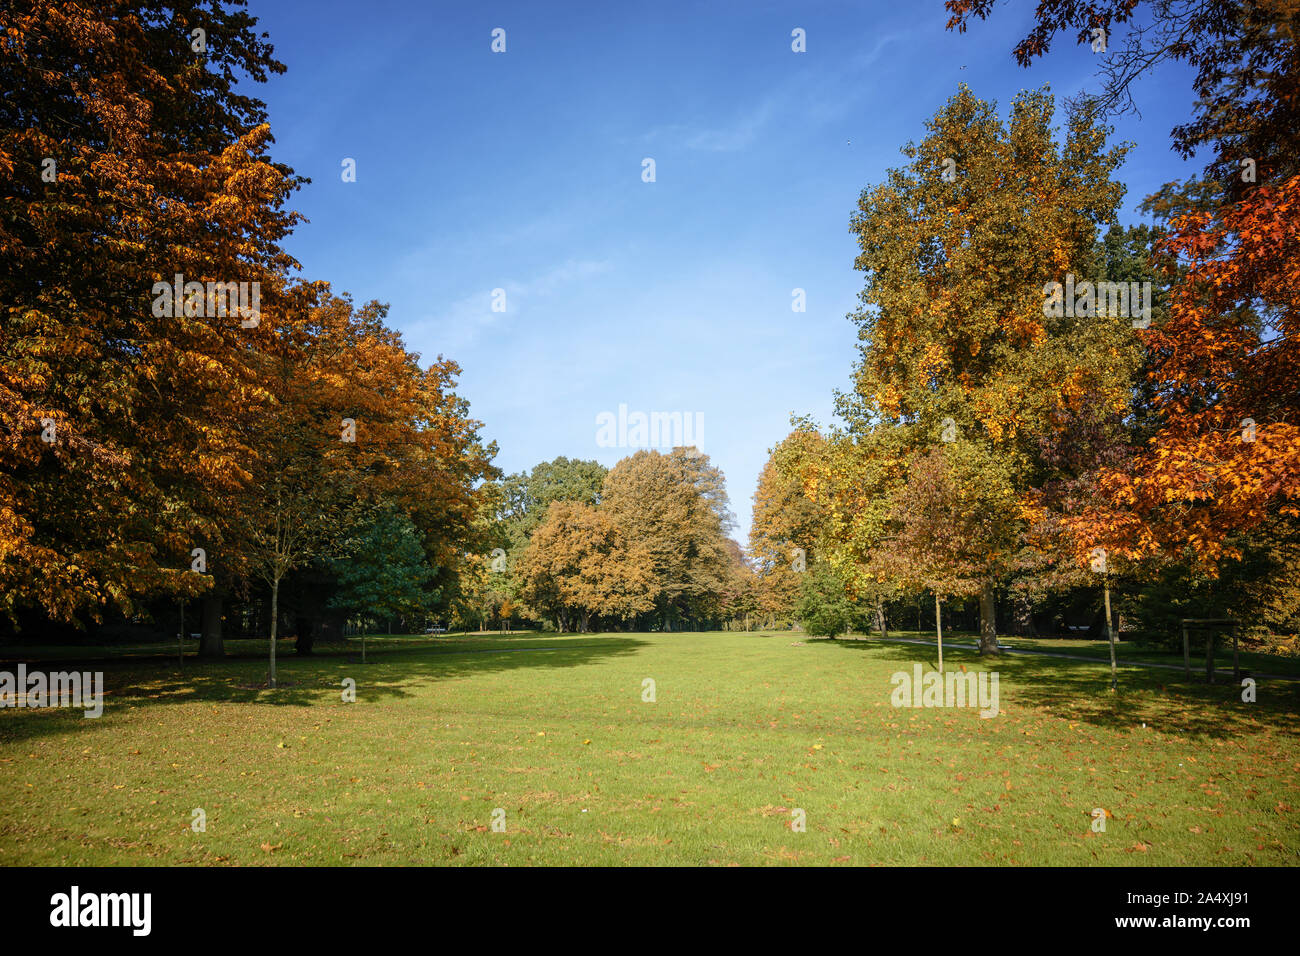 Varie autunno bello e mite di alberi con foglie colorate in un parco antico, natura stagionale con uno sfondo con spazio di copia Foto Stock